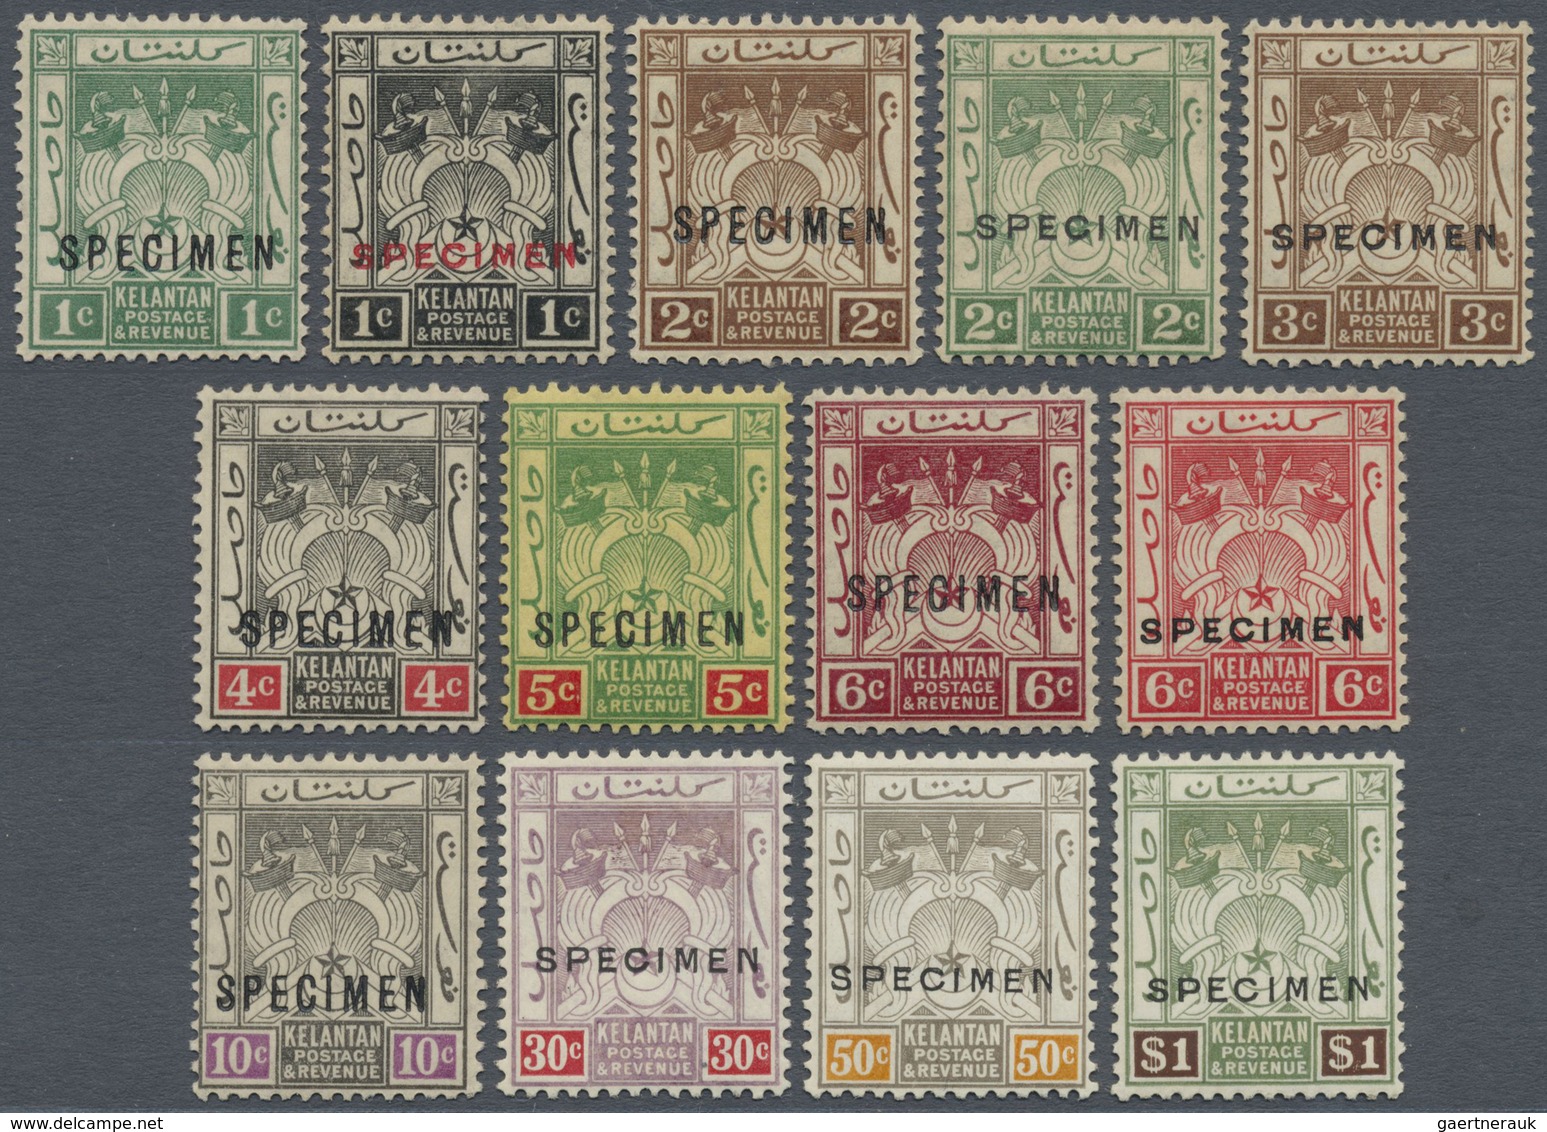 Malaiische Staaten - Kelantan: 1921-28 Complete Set Of 13 Stamps Optd. "SPECIMEN" In Red Or Black, M - Kelantan